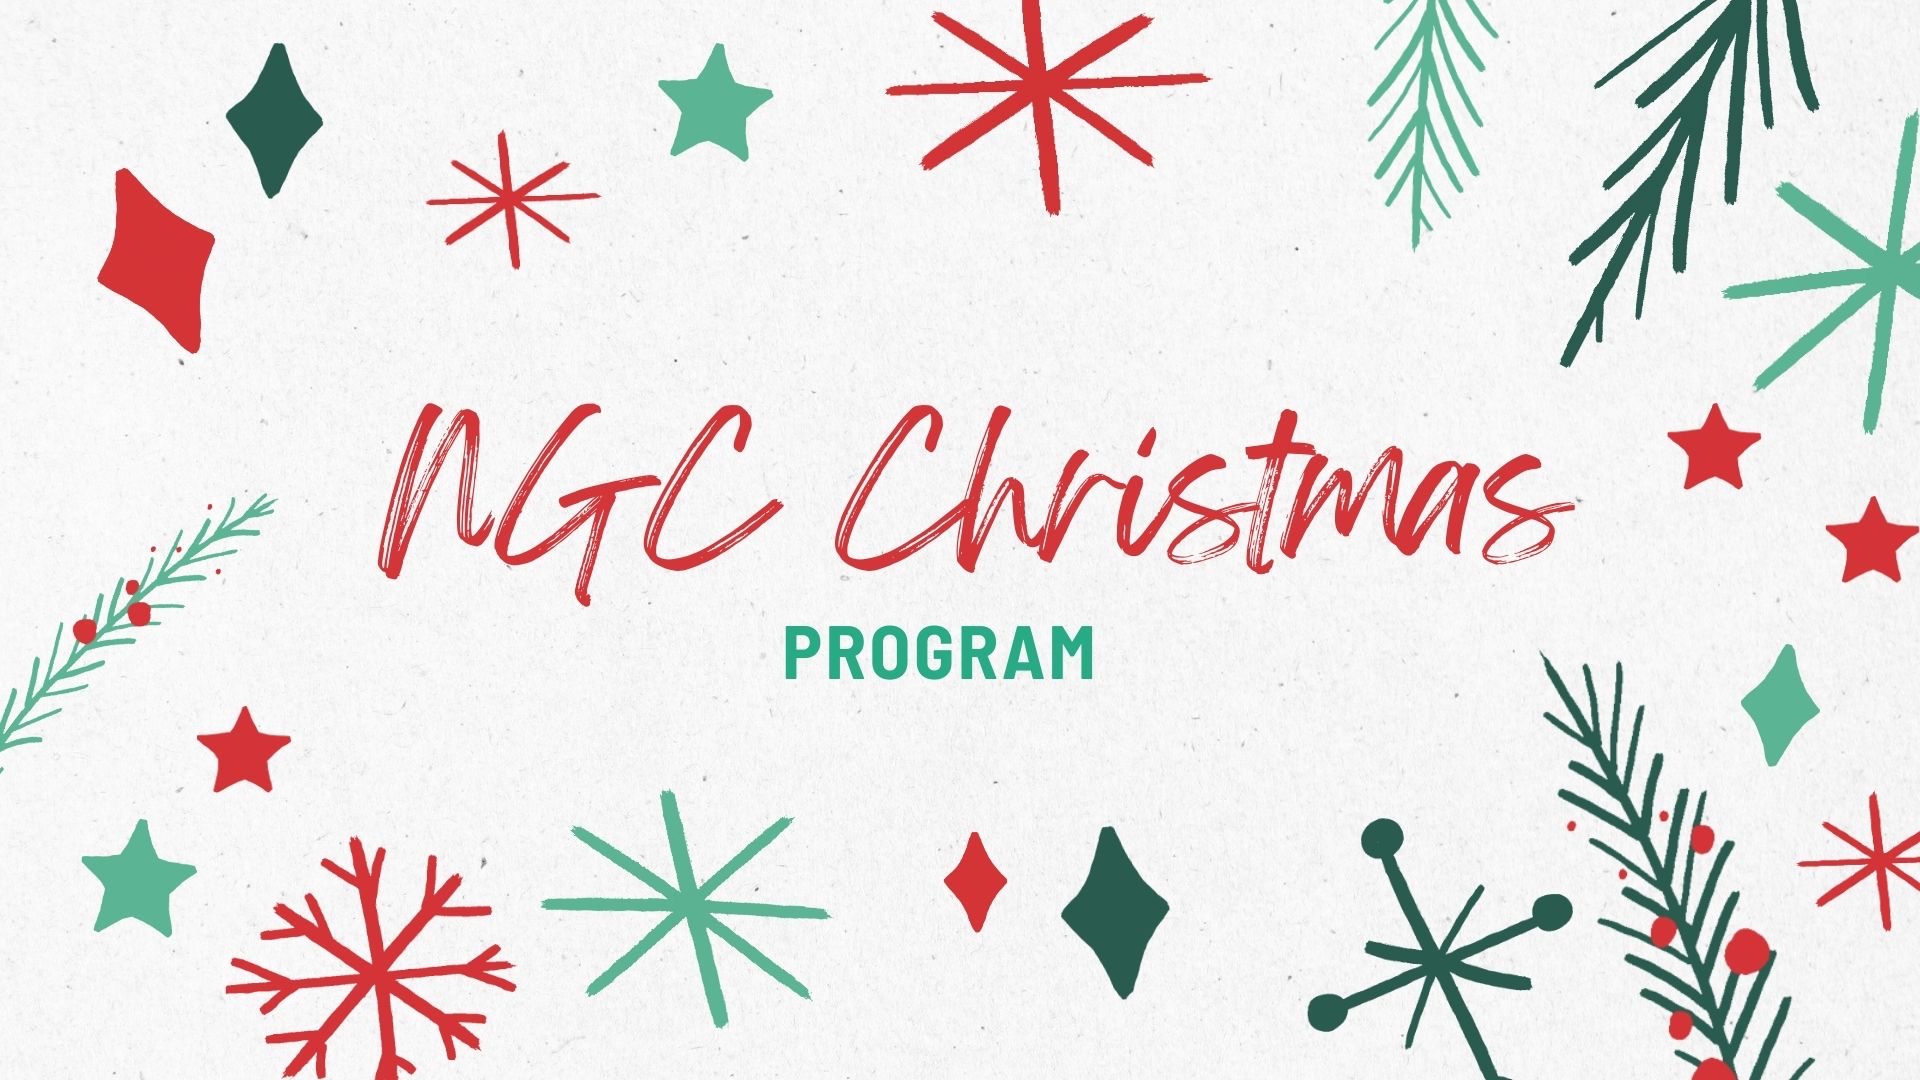 Christmas Program banner